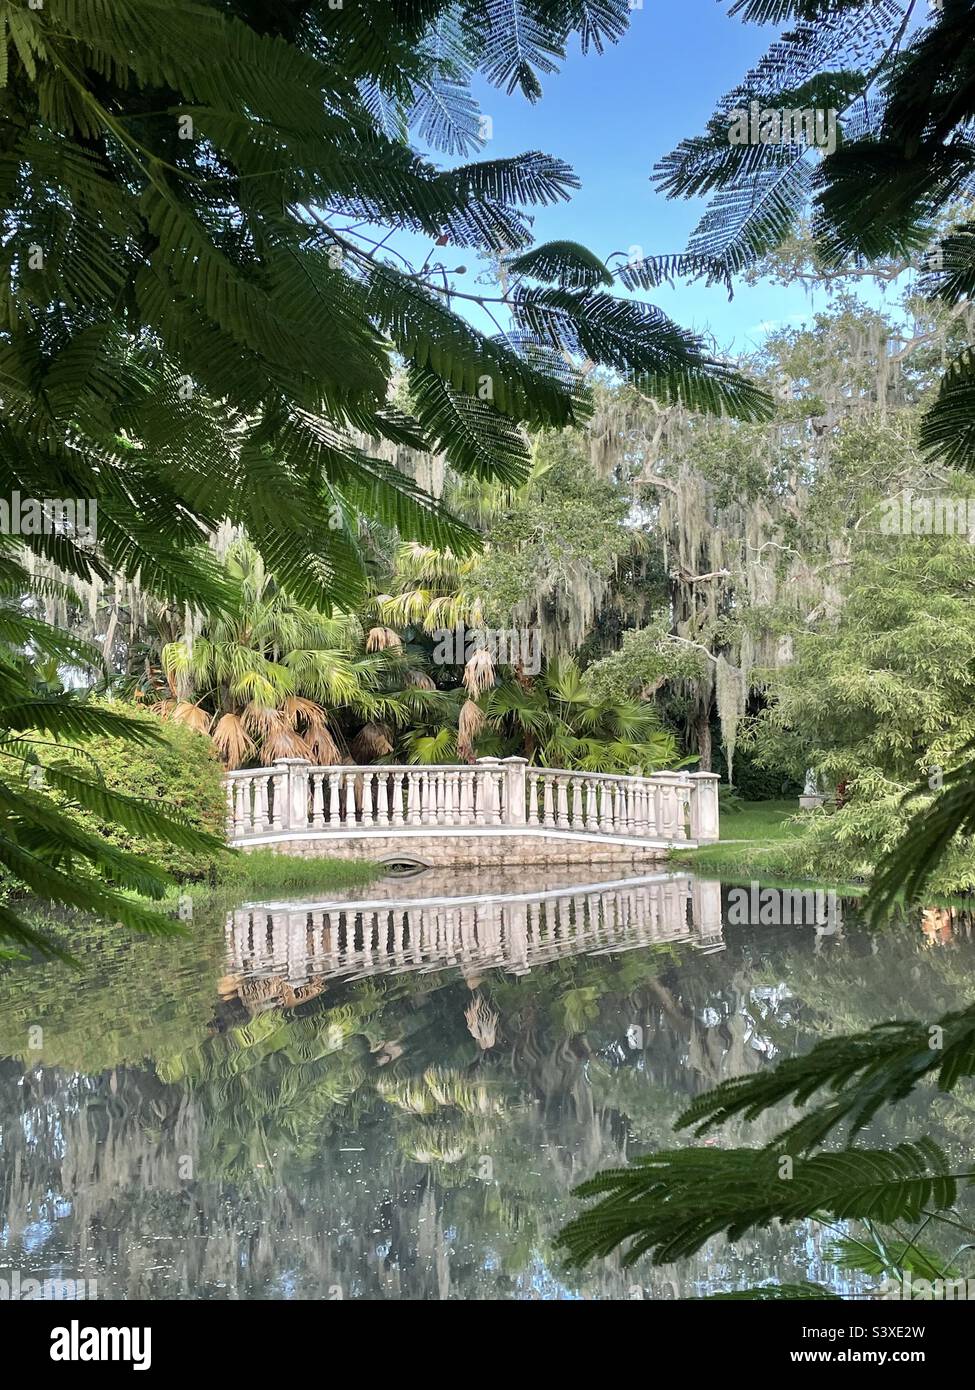 Riflessioni colonne bianche sul ponte giardino nel sud tropicale stagno giardino con palme, muschio sospeso, cornice fronds verdi. Foto Stock